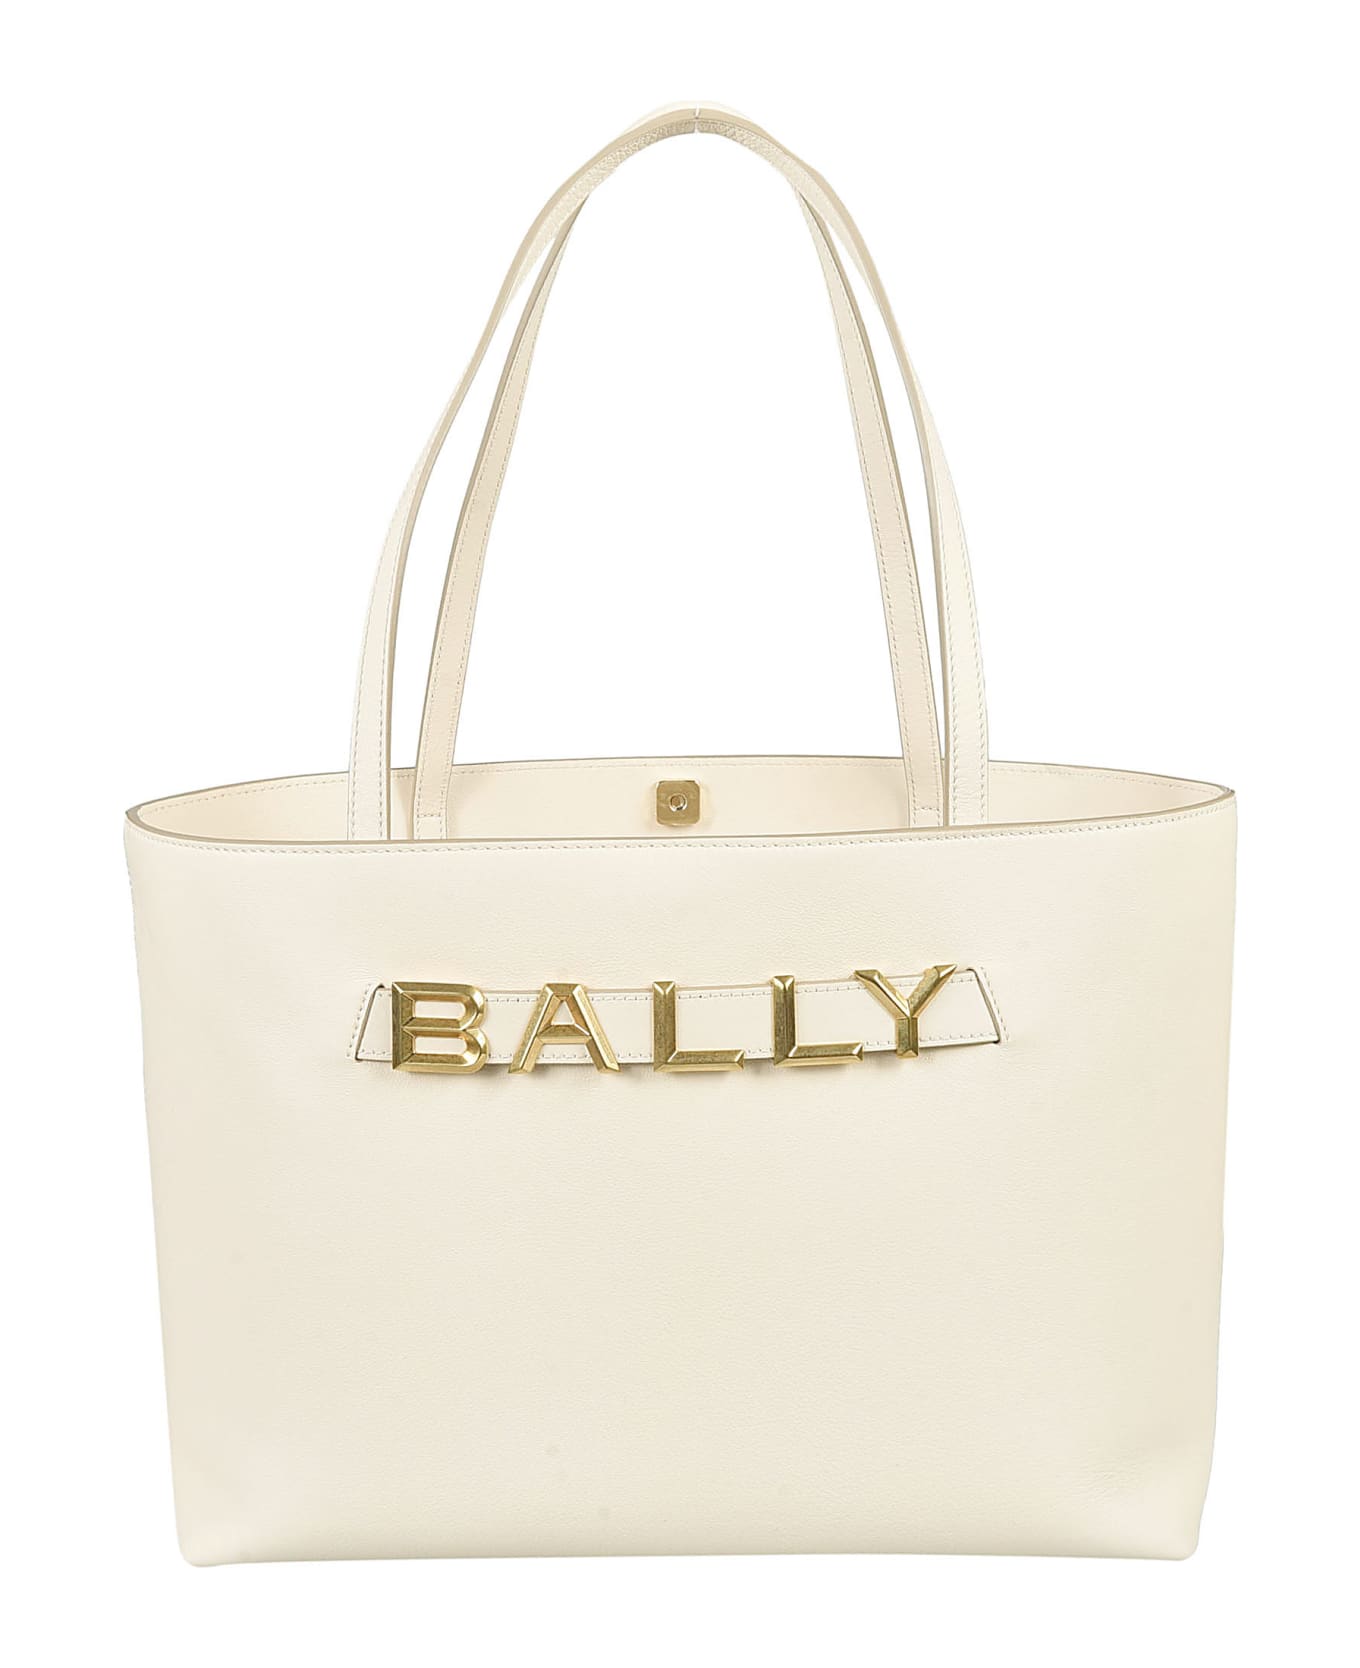 Bally Logo Tote - Cream